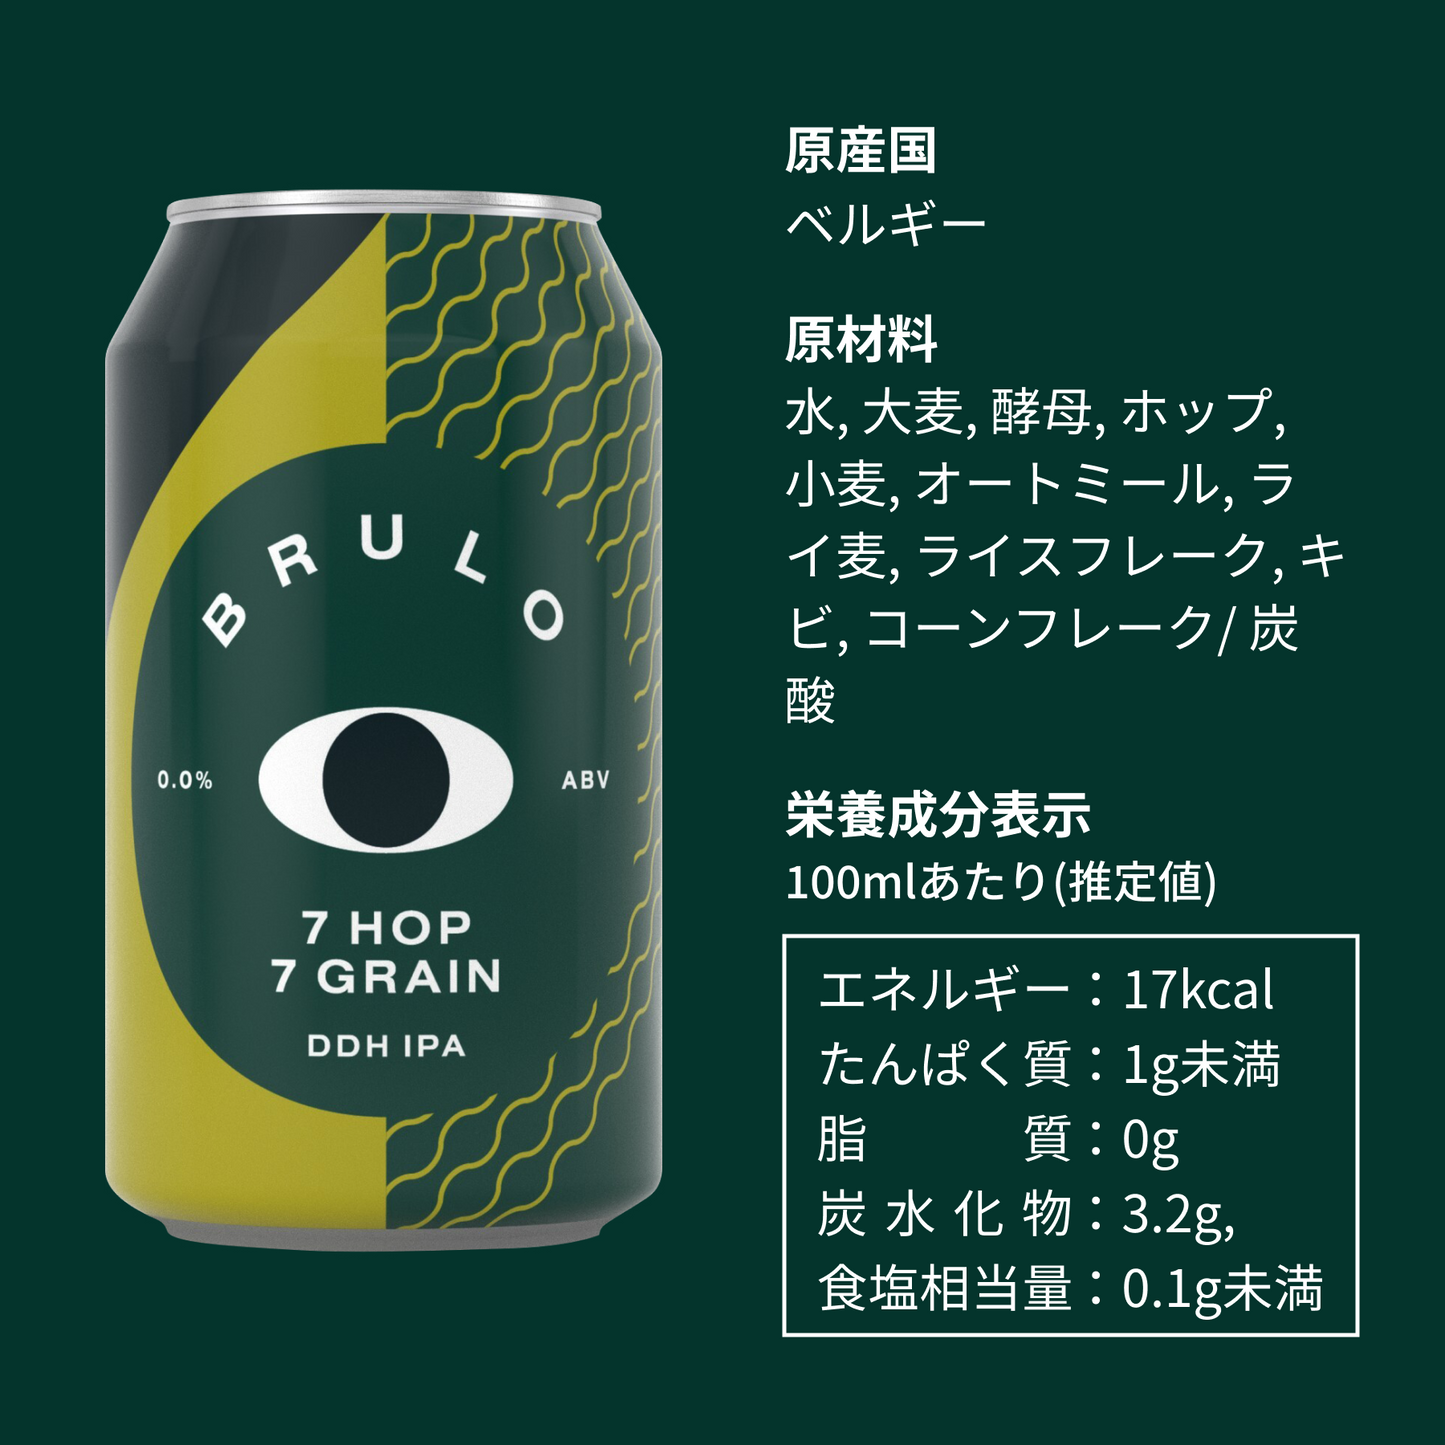 ノンアルコールビール BRULO（ブルーロ） 0.0% 330ml DDH IPA 3種セット